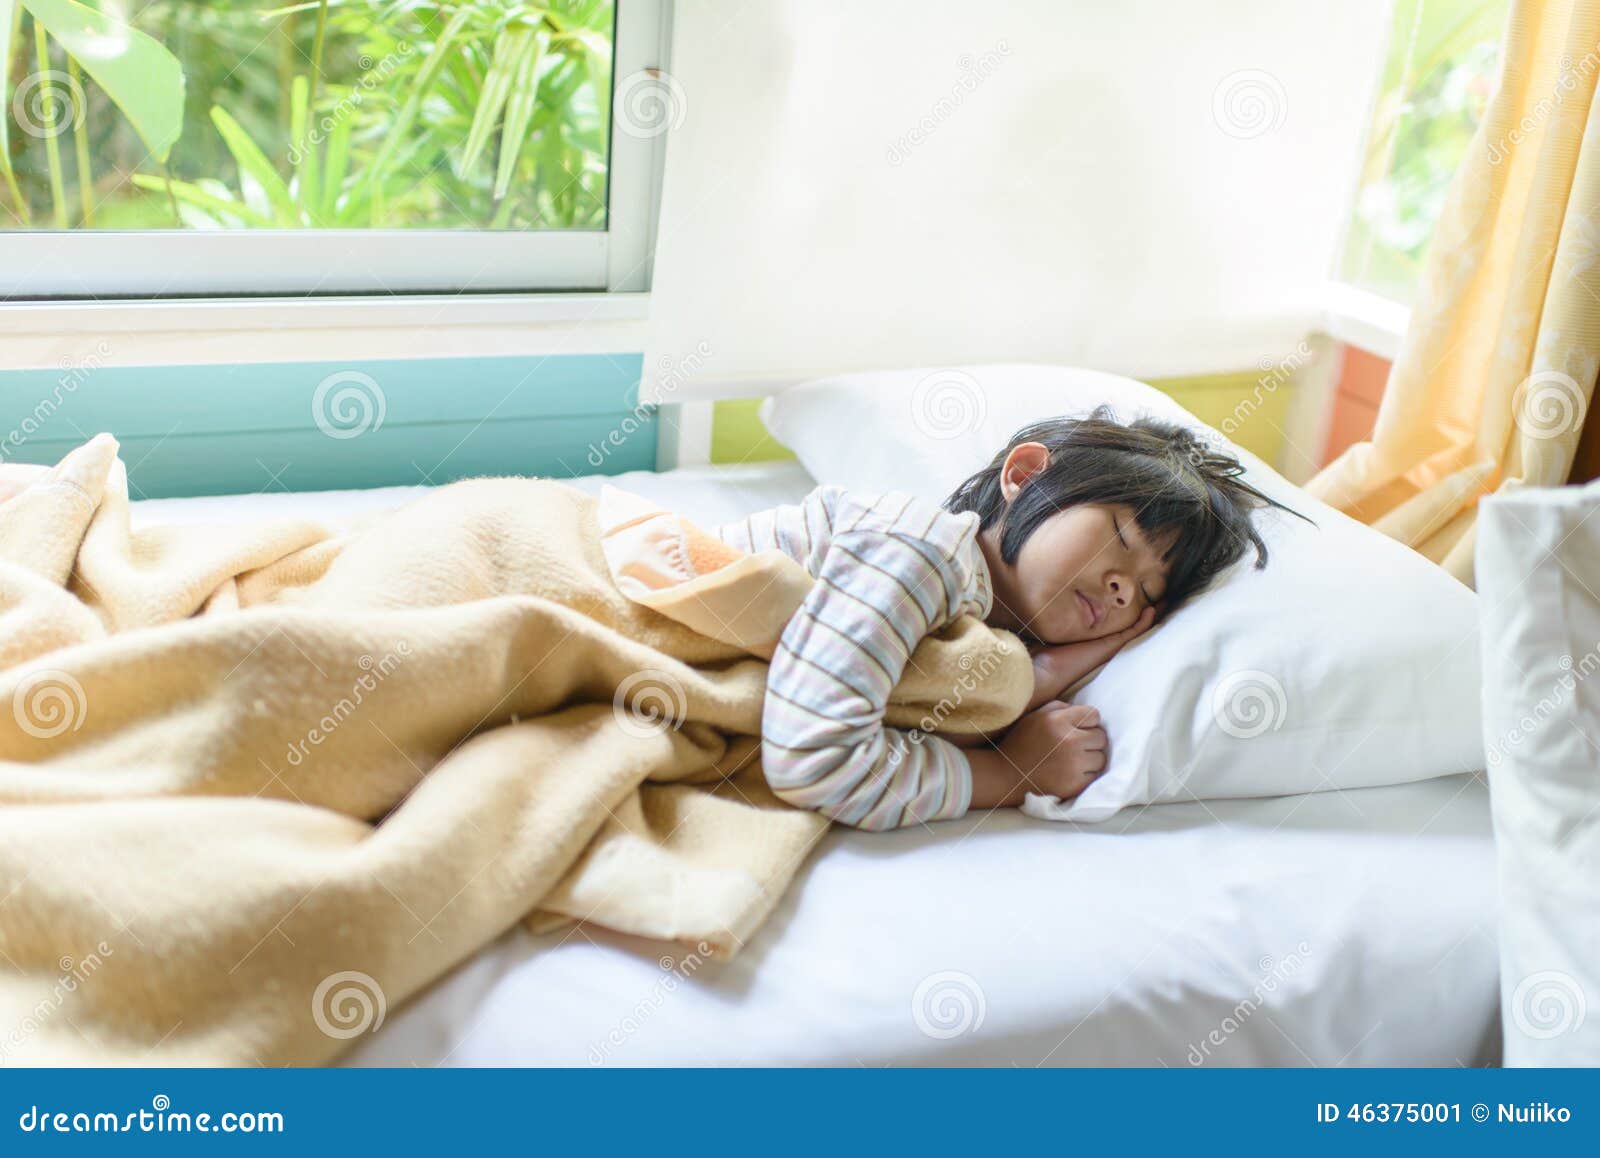 Азиатки спят видео. Ребенок спрятался под одеялом. Трах под одеялом пока дети спят.